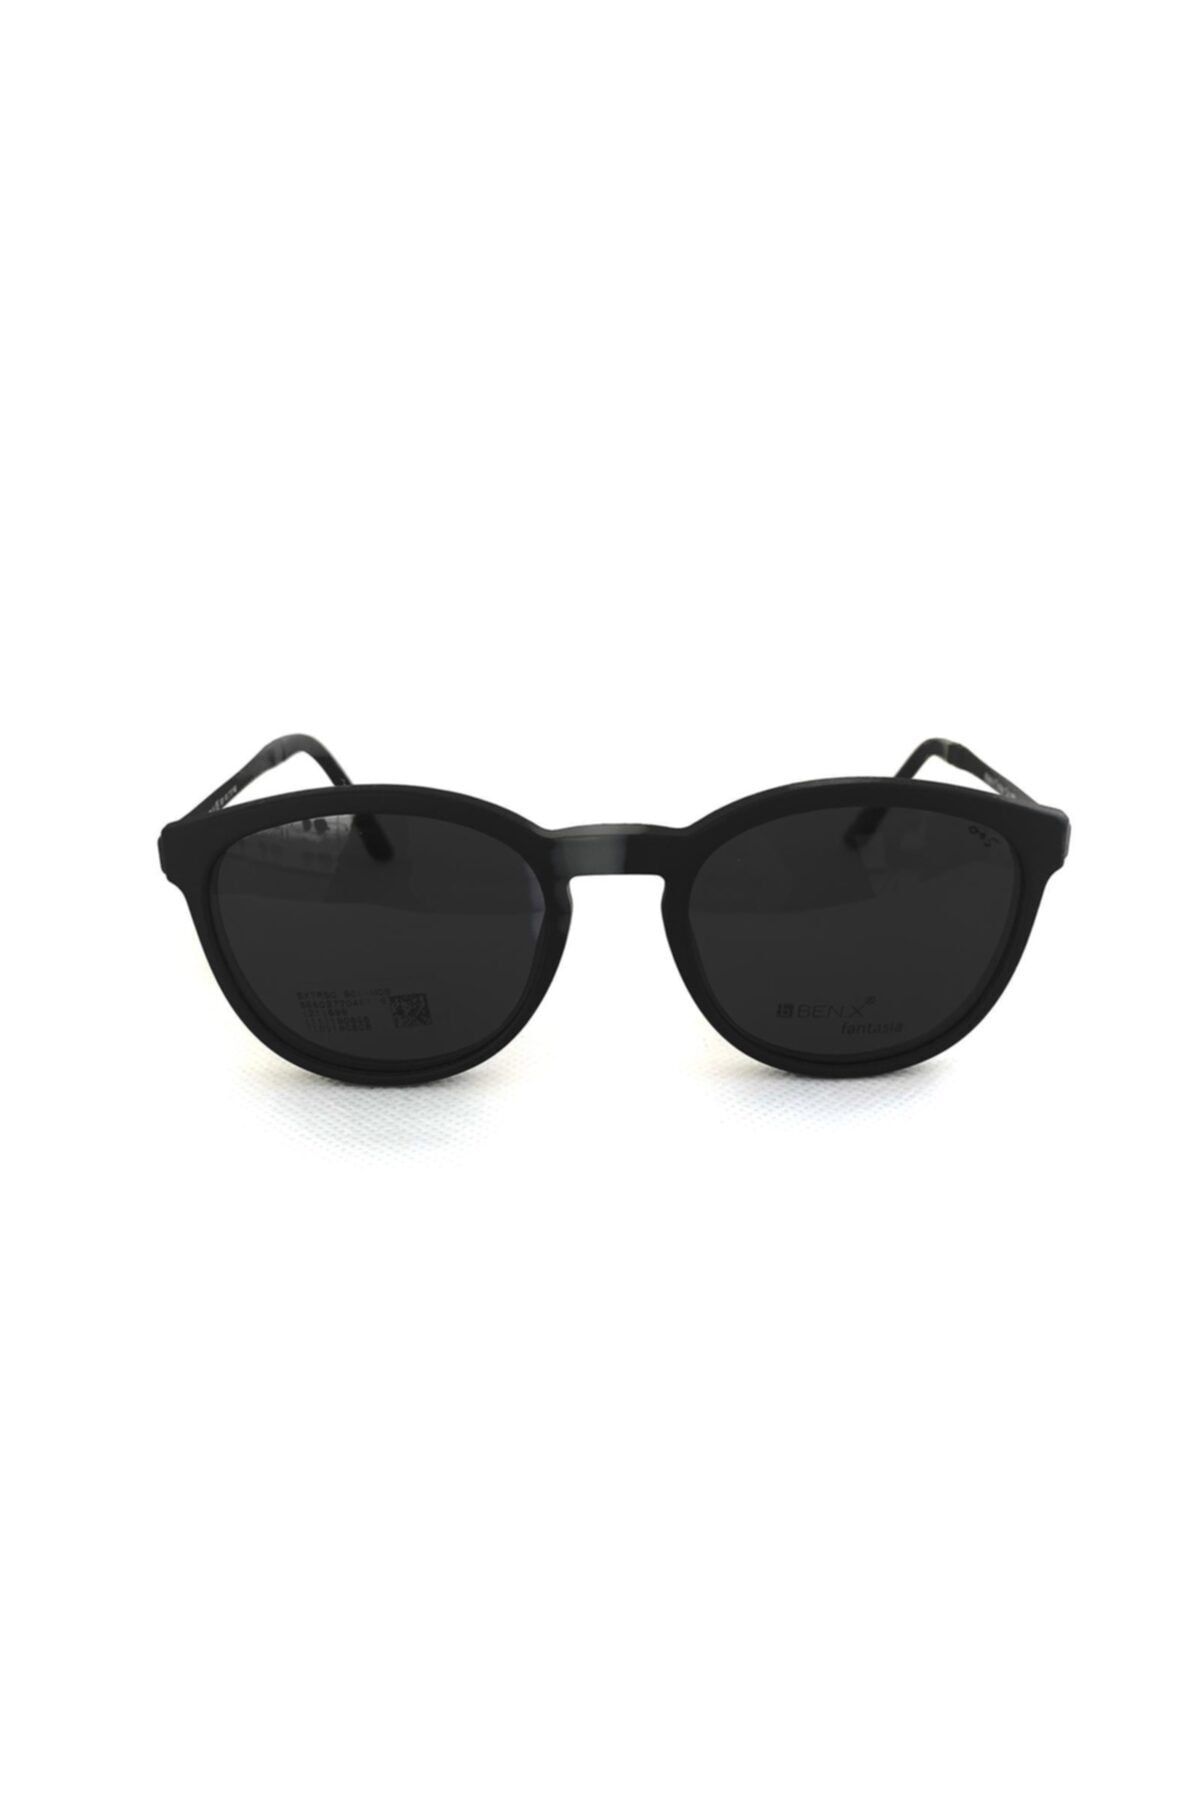 Benx Sunglasses Benx Fantasia B909 M06124 Polarize Camlı Klipsli Gözlük